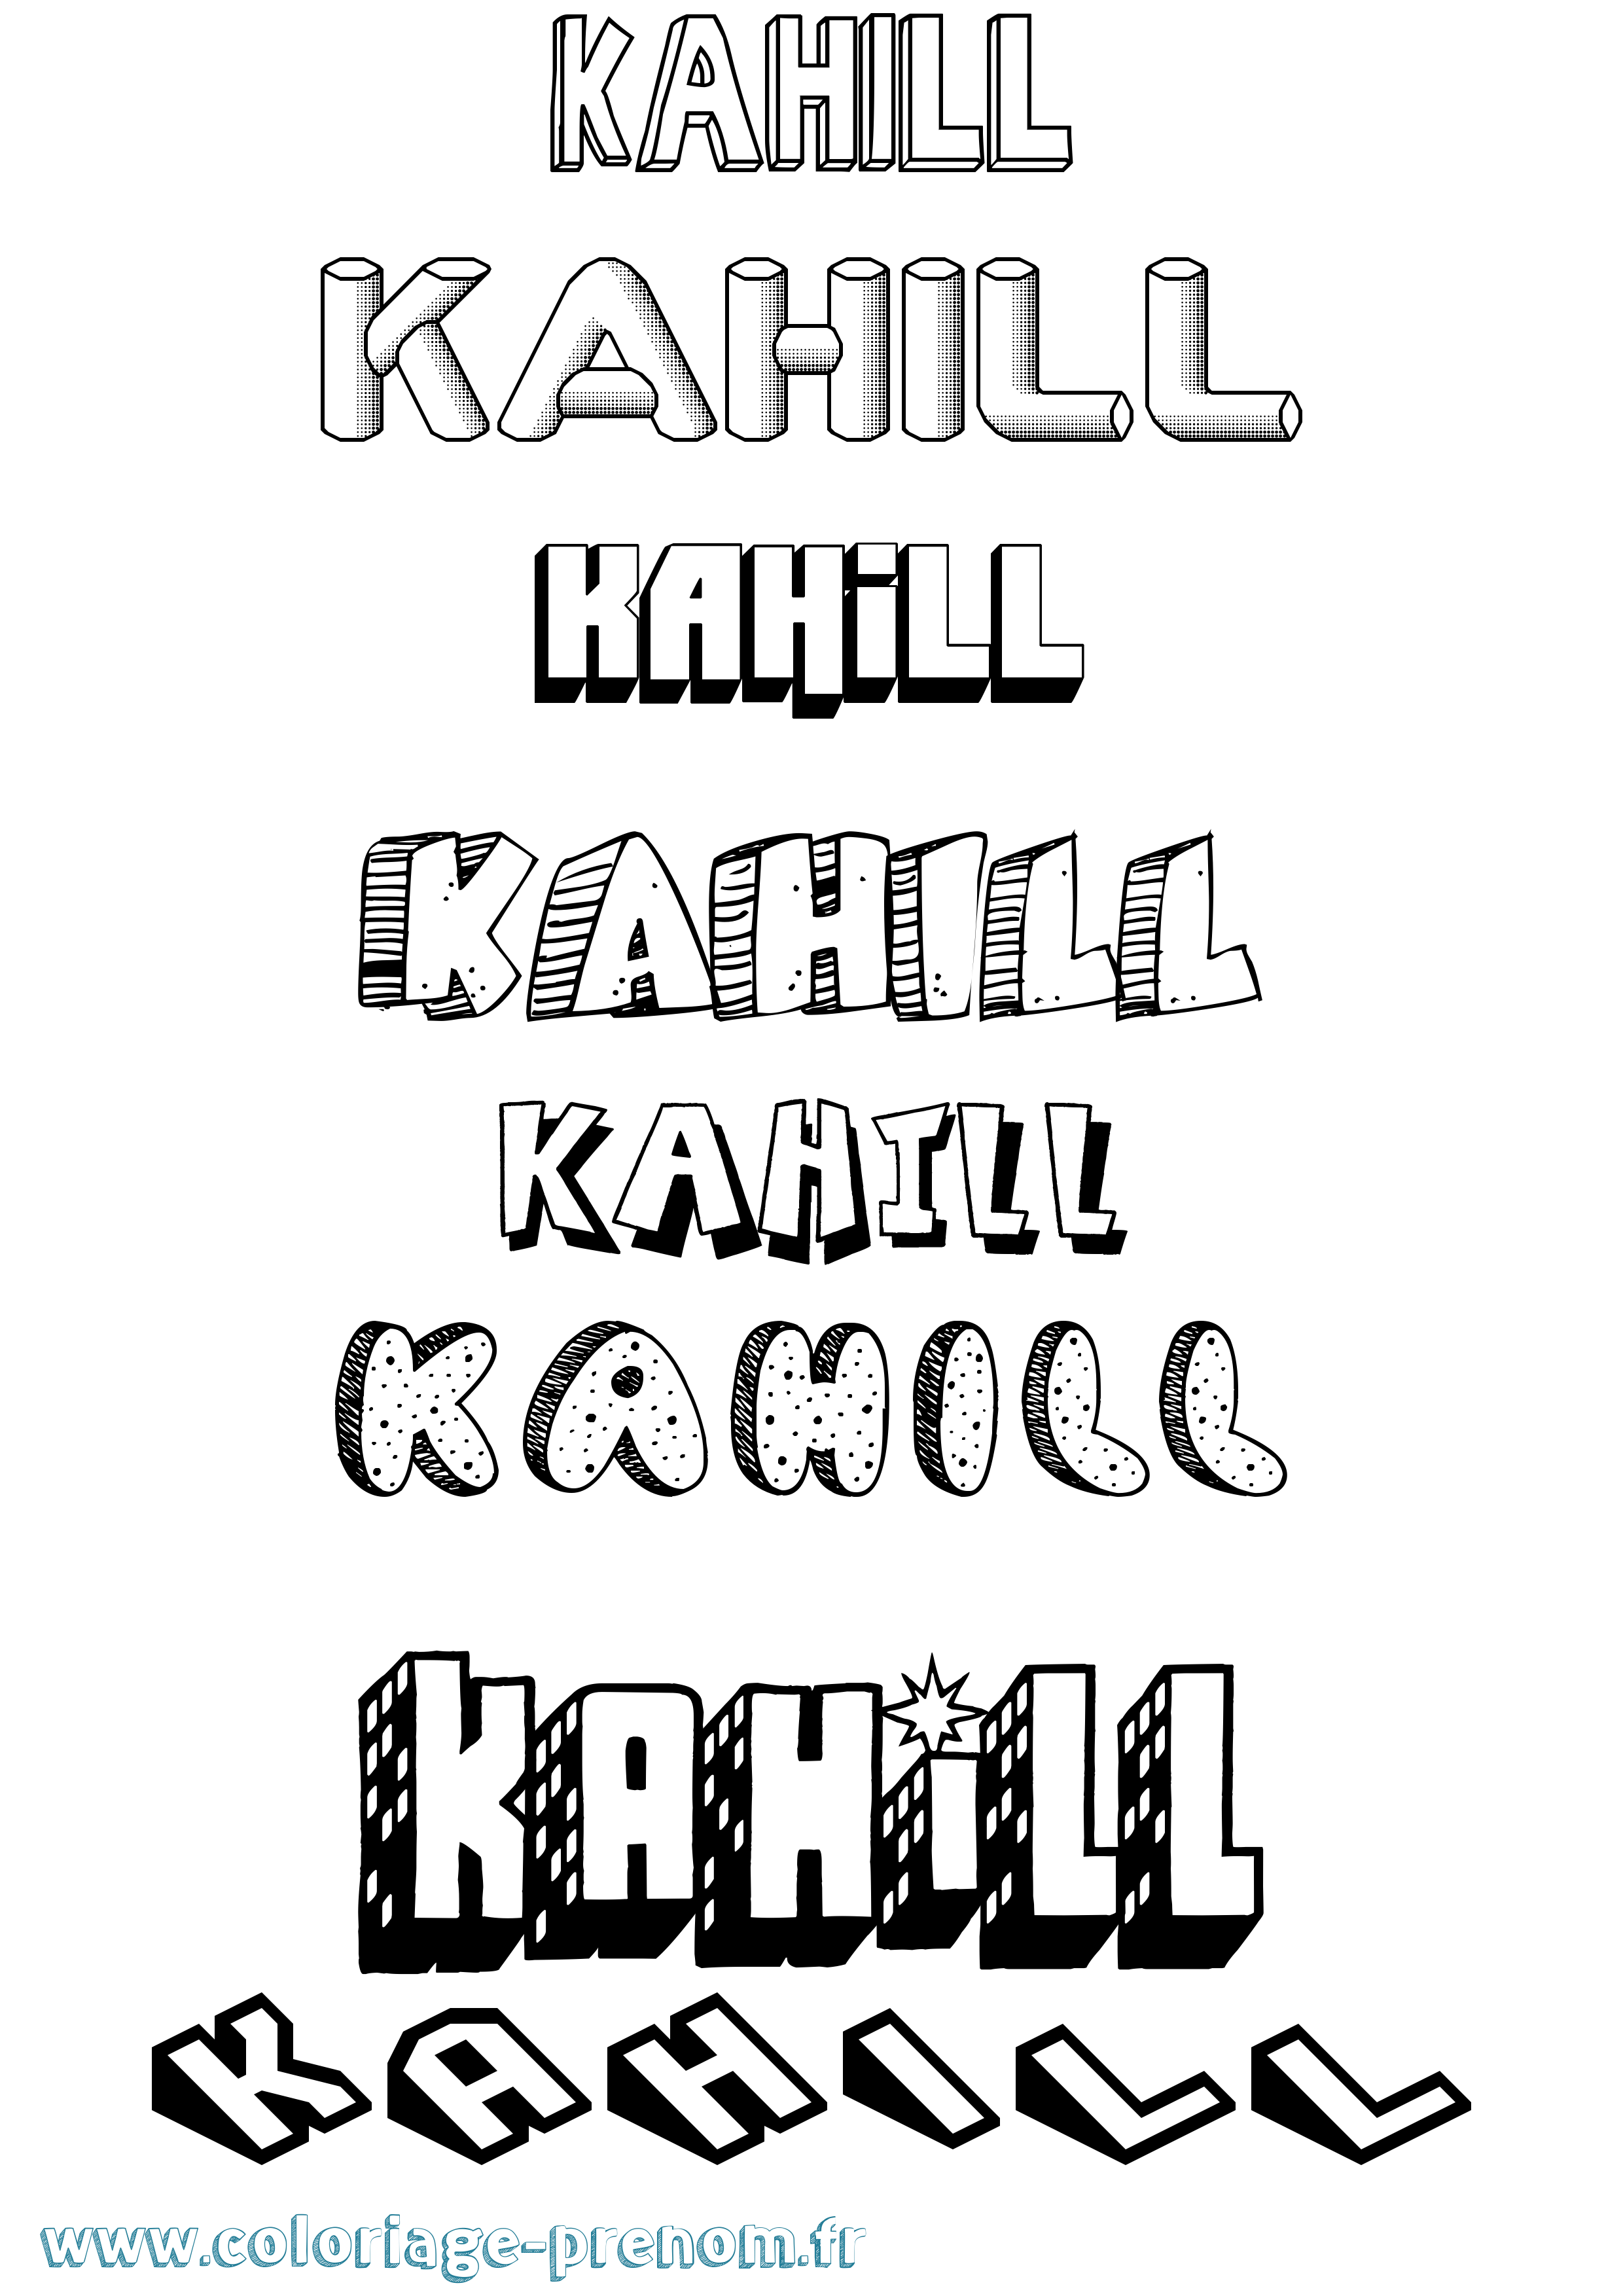 Coloriage prénom Kahill Effet 3D